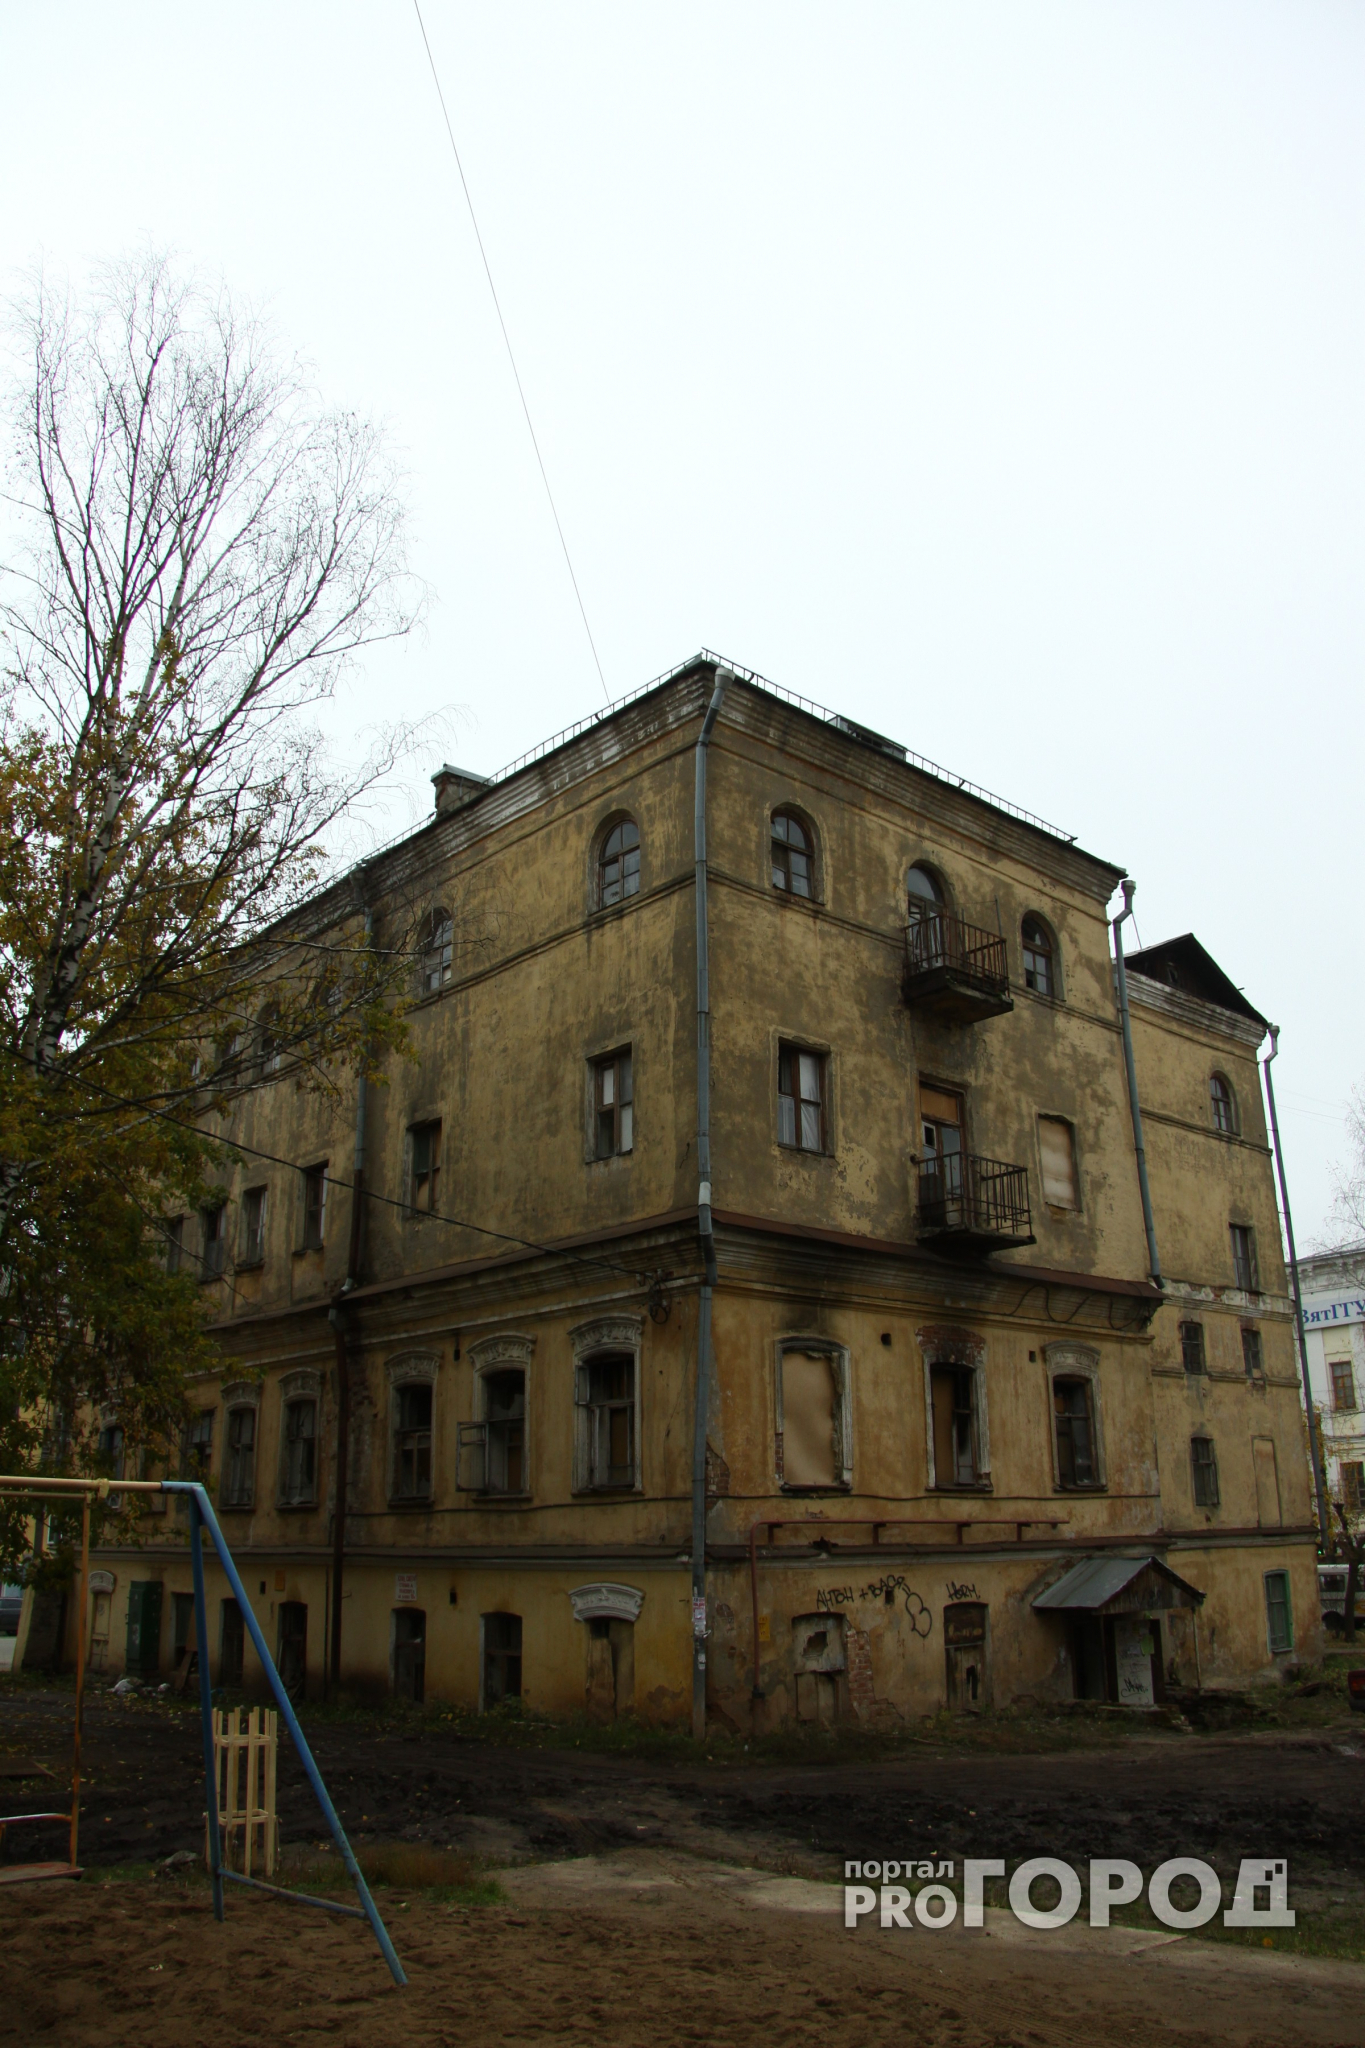 Глава Коми напомнил Сосногорской администрации об аварийном общежитии